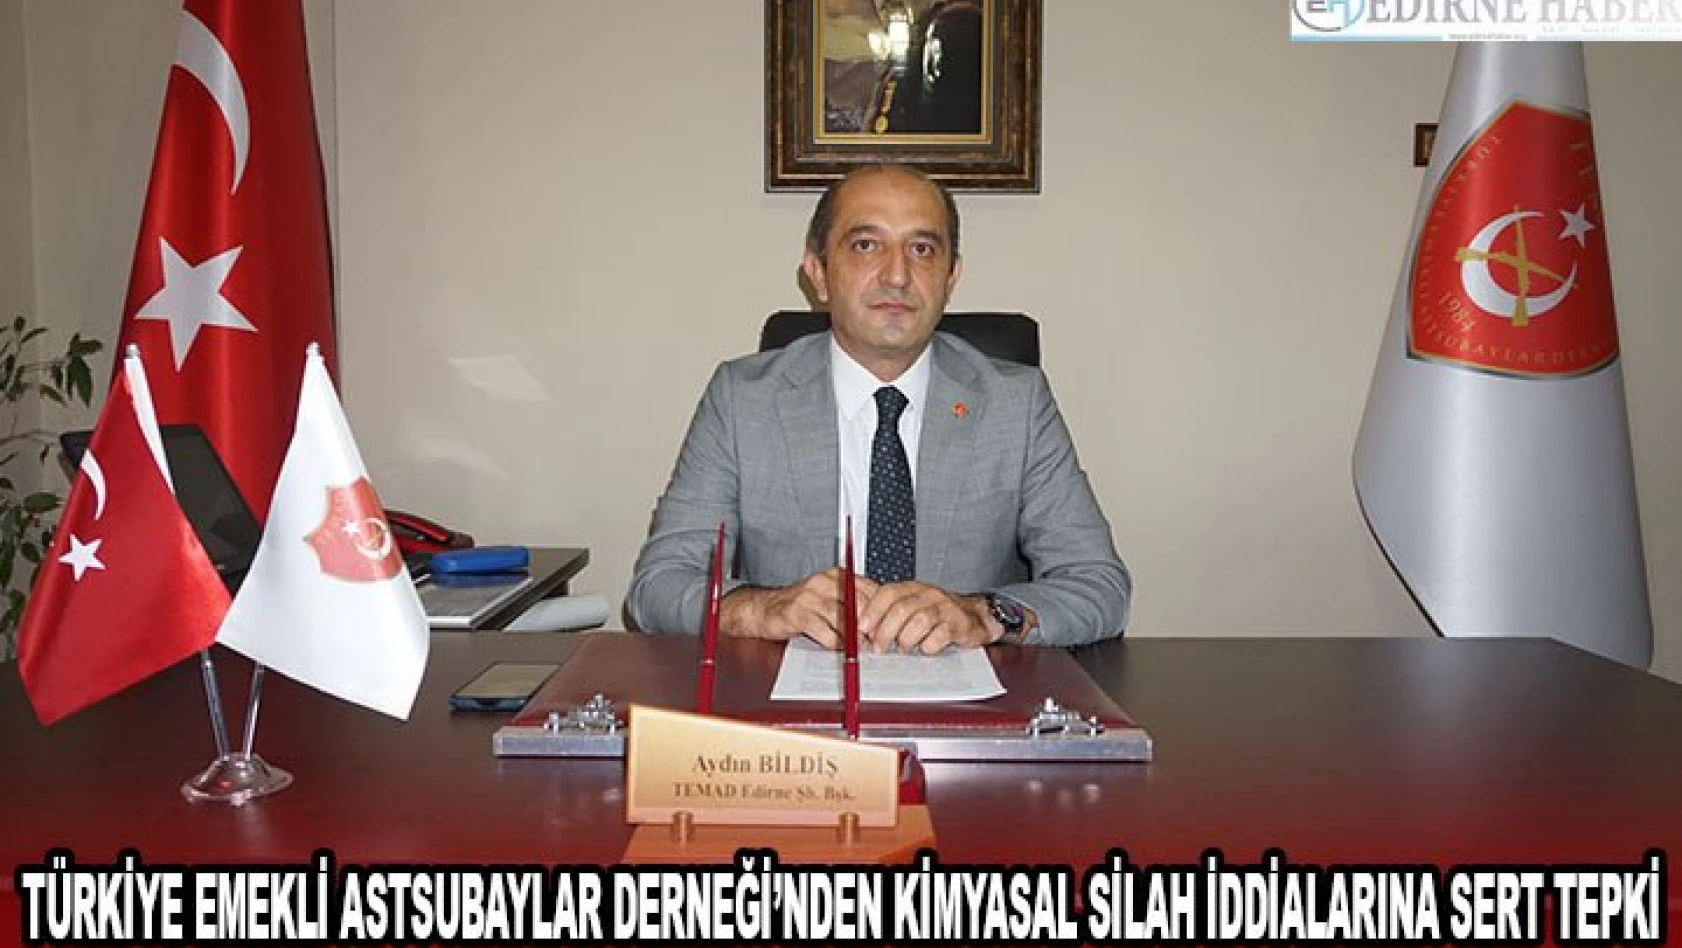 Türkiye Emekli Astsubaylar Derneği'nden kimyasal silah iddialarına sert tepki